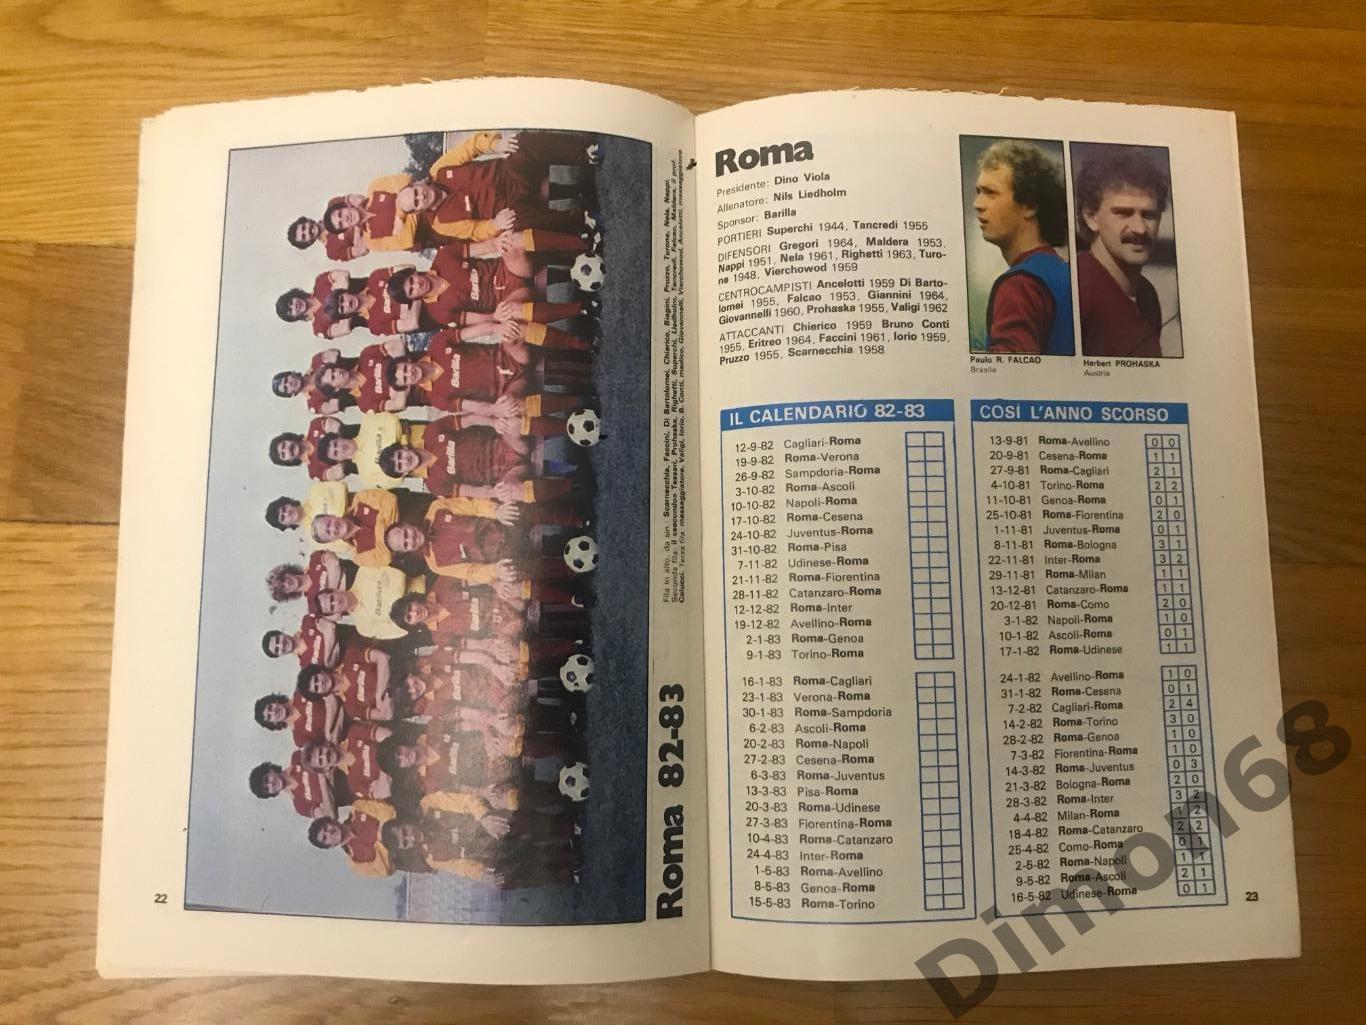 приложение из журнала гуерин спортивно чемпионат италии сезон 1982/83г 4